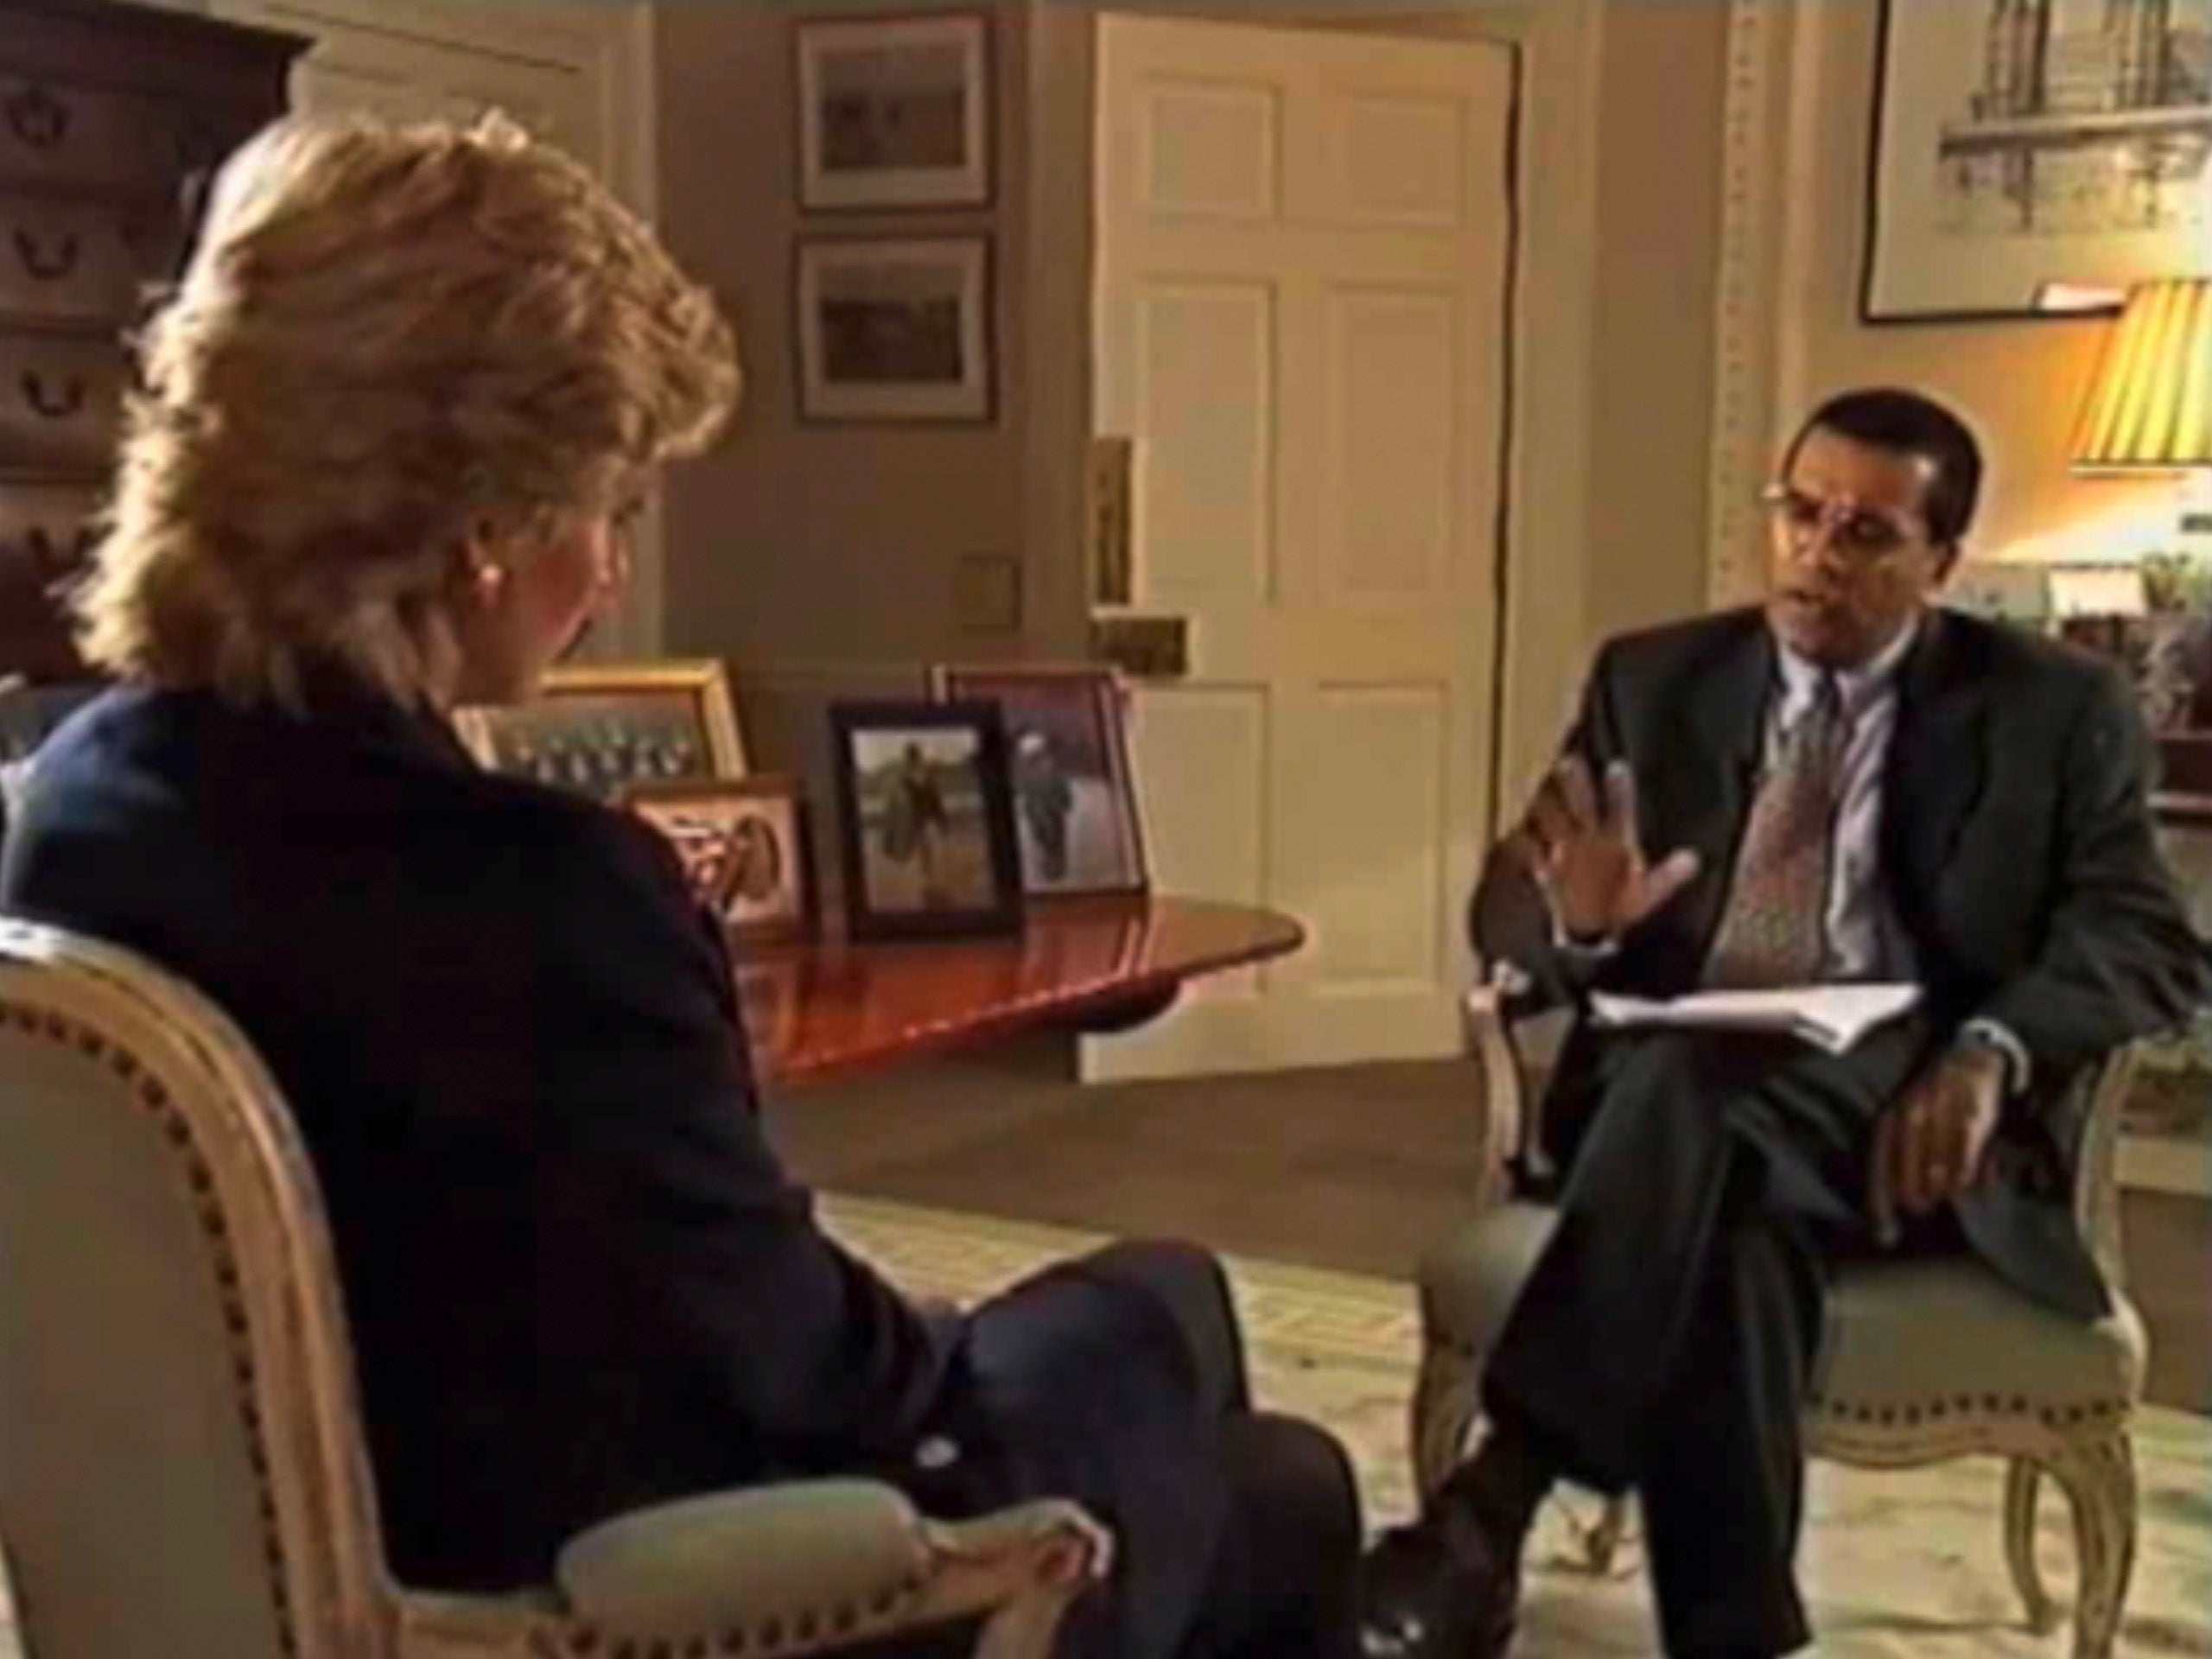 Martin Bashir interviewing Princess Diana on Panorama in 1995